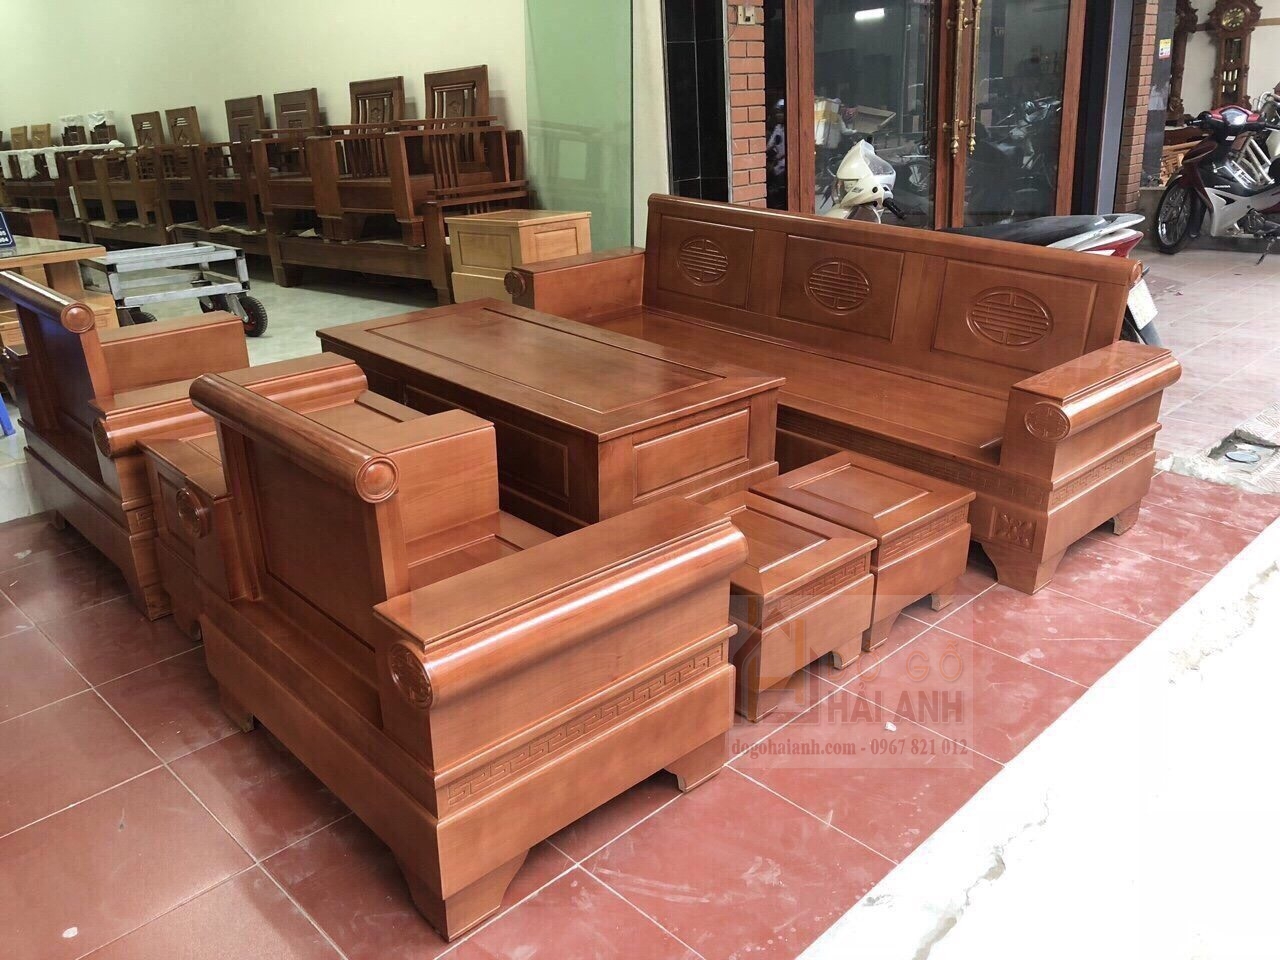 Bàn ghế phòng khách gỗ sồi Nga của chúng tôi mang đến sự sang trọng và đẳng cấp cho phòng khách của bạn. Với chất liệu gỗ sồi Nga cao cấp, sản phẩm của chúng tôi được chế tác tỉ mỉ, đảm bảo tính thẩm mỹ và độ bền của sản phẩm.